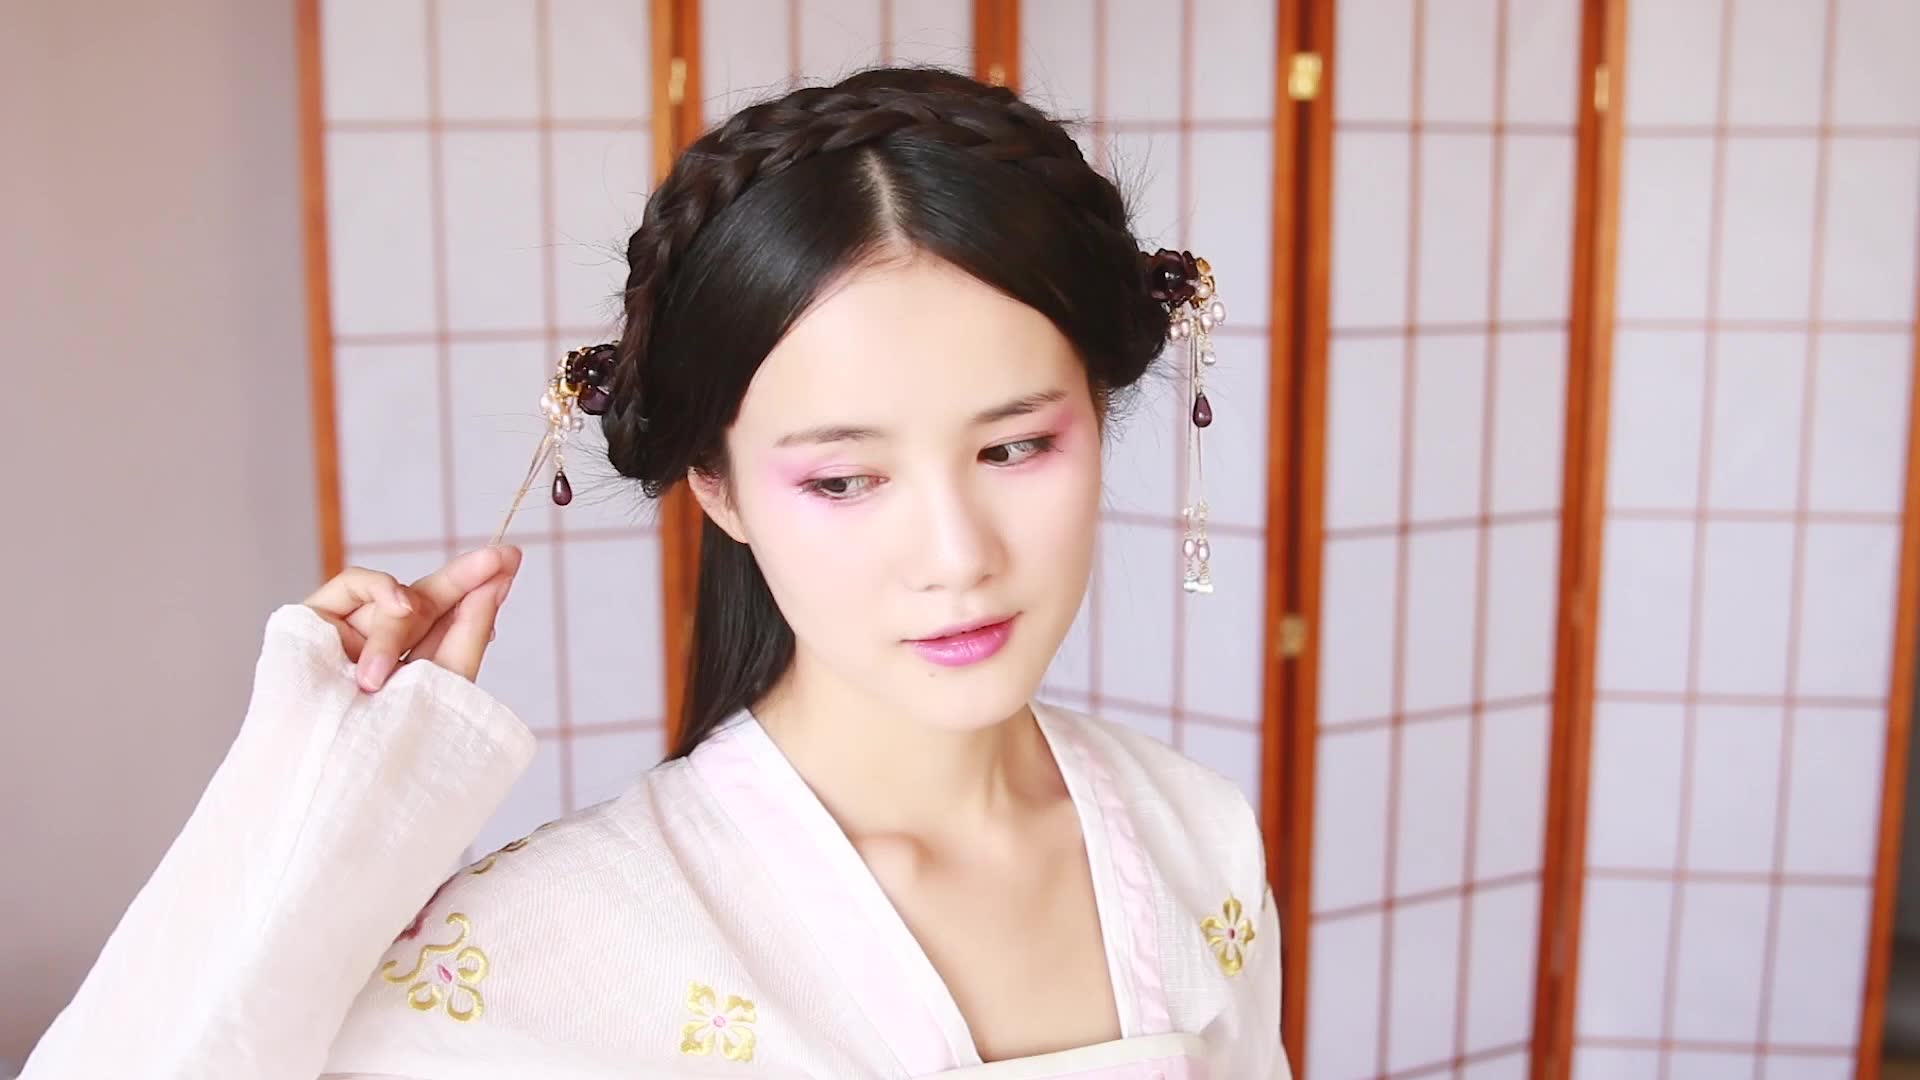 插梳盘发图解法,绾青丝——中国古代女子发型 - 贵州图库